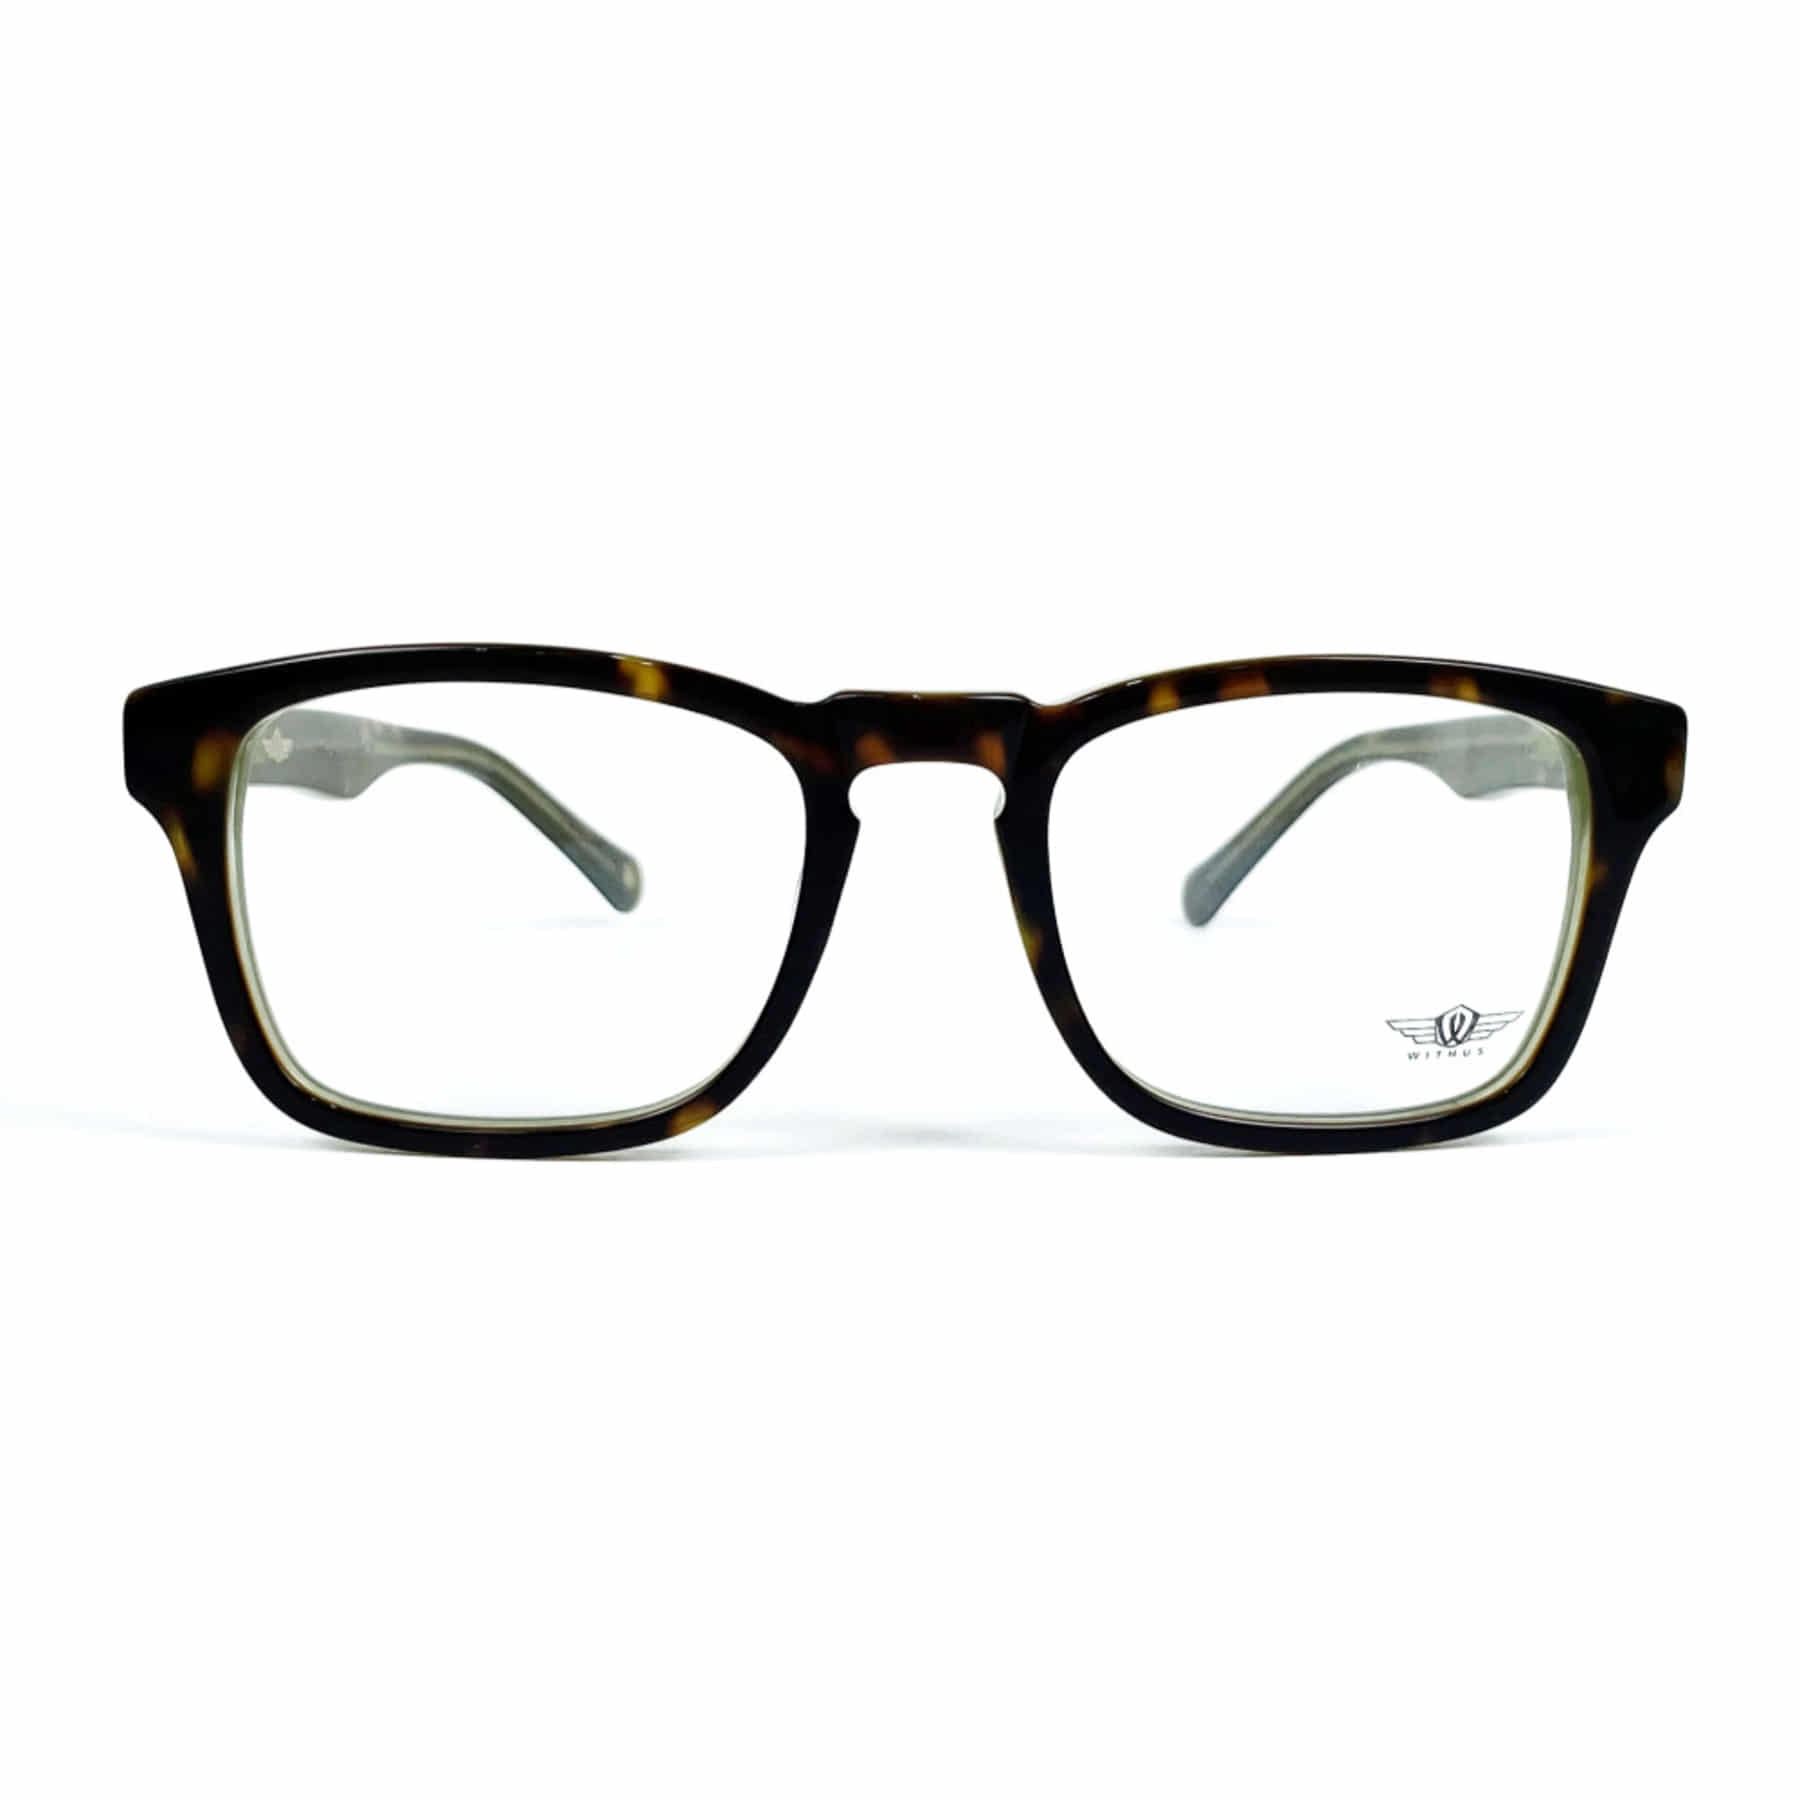 WITHUS-8126, Korean glasses, sunglasses, eyeglasses, glasses